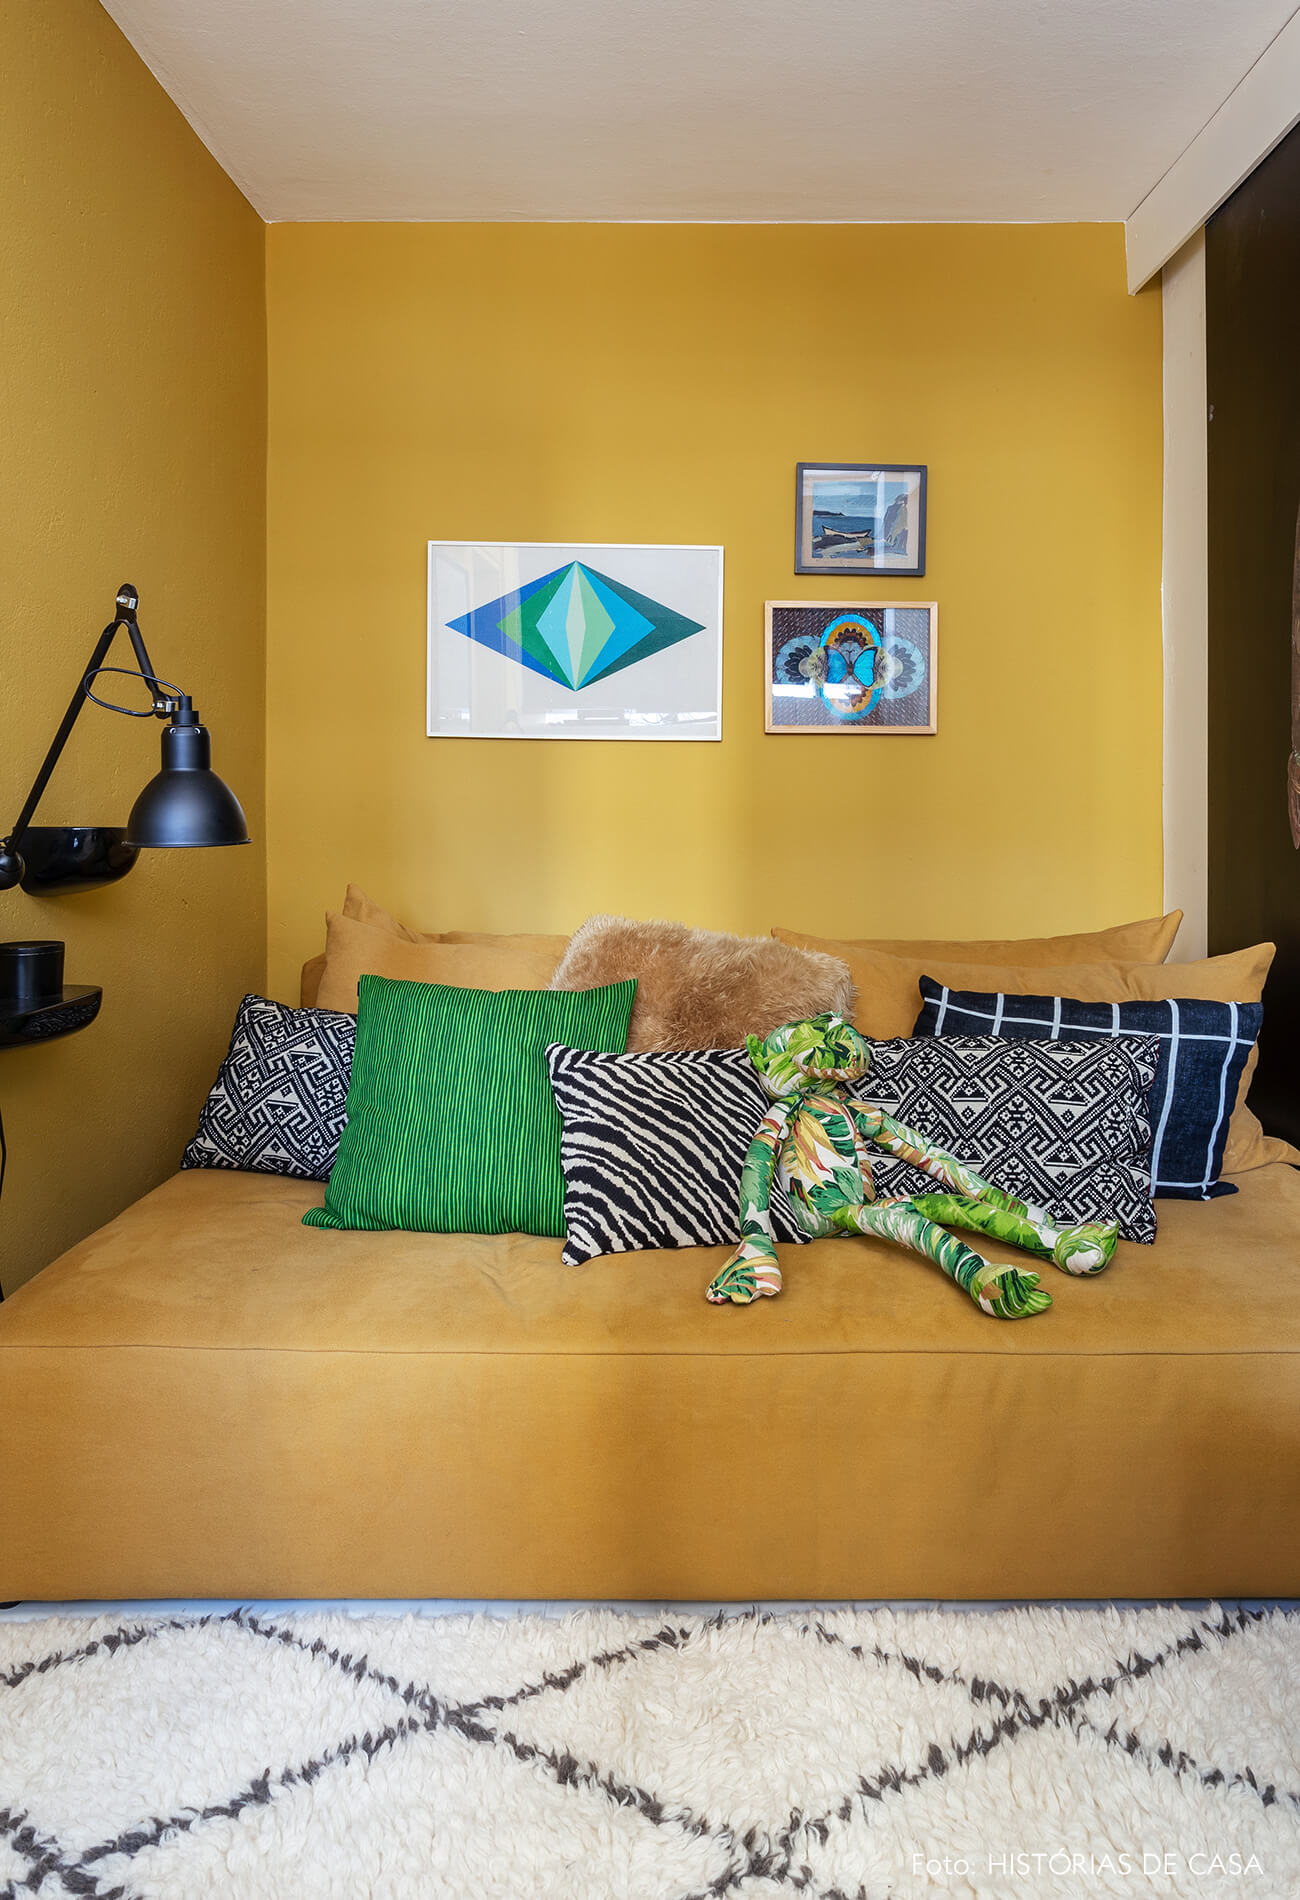 A casa do Maurício Arruda, sala com paredes coloridas, tom mostarda